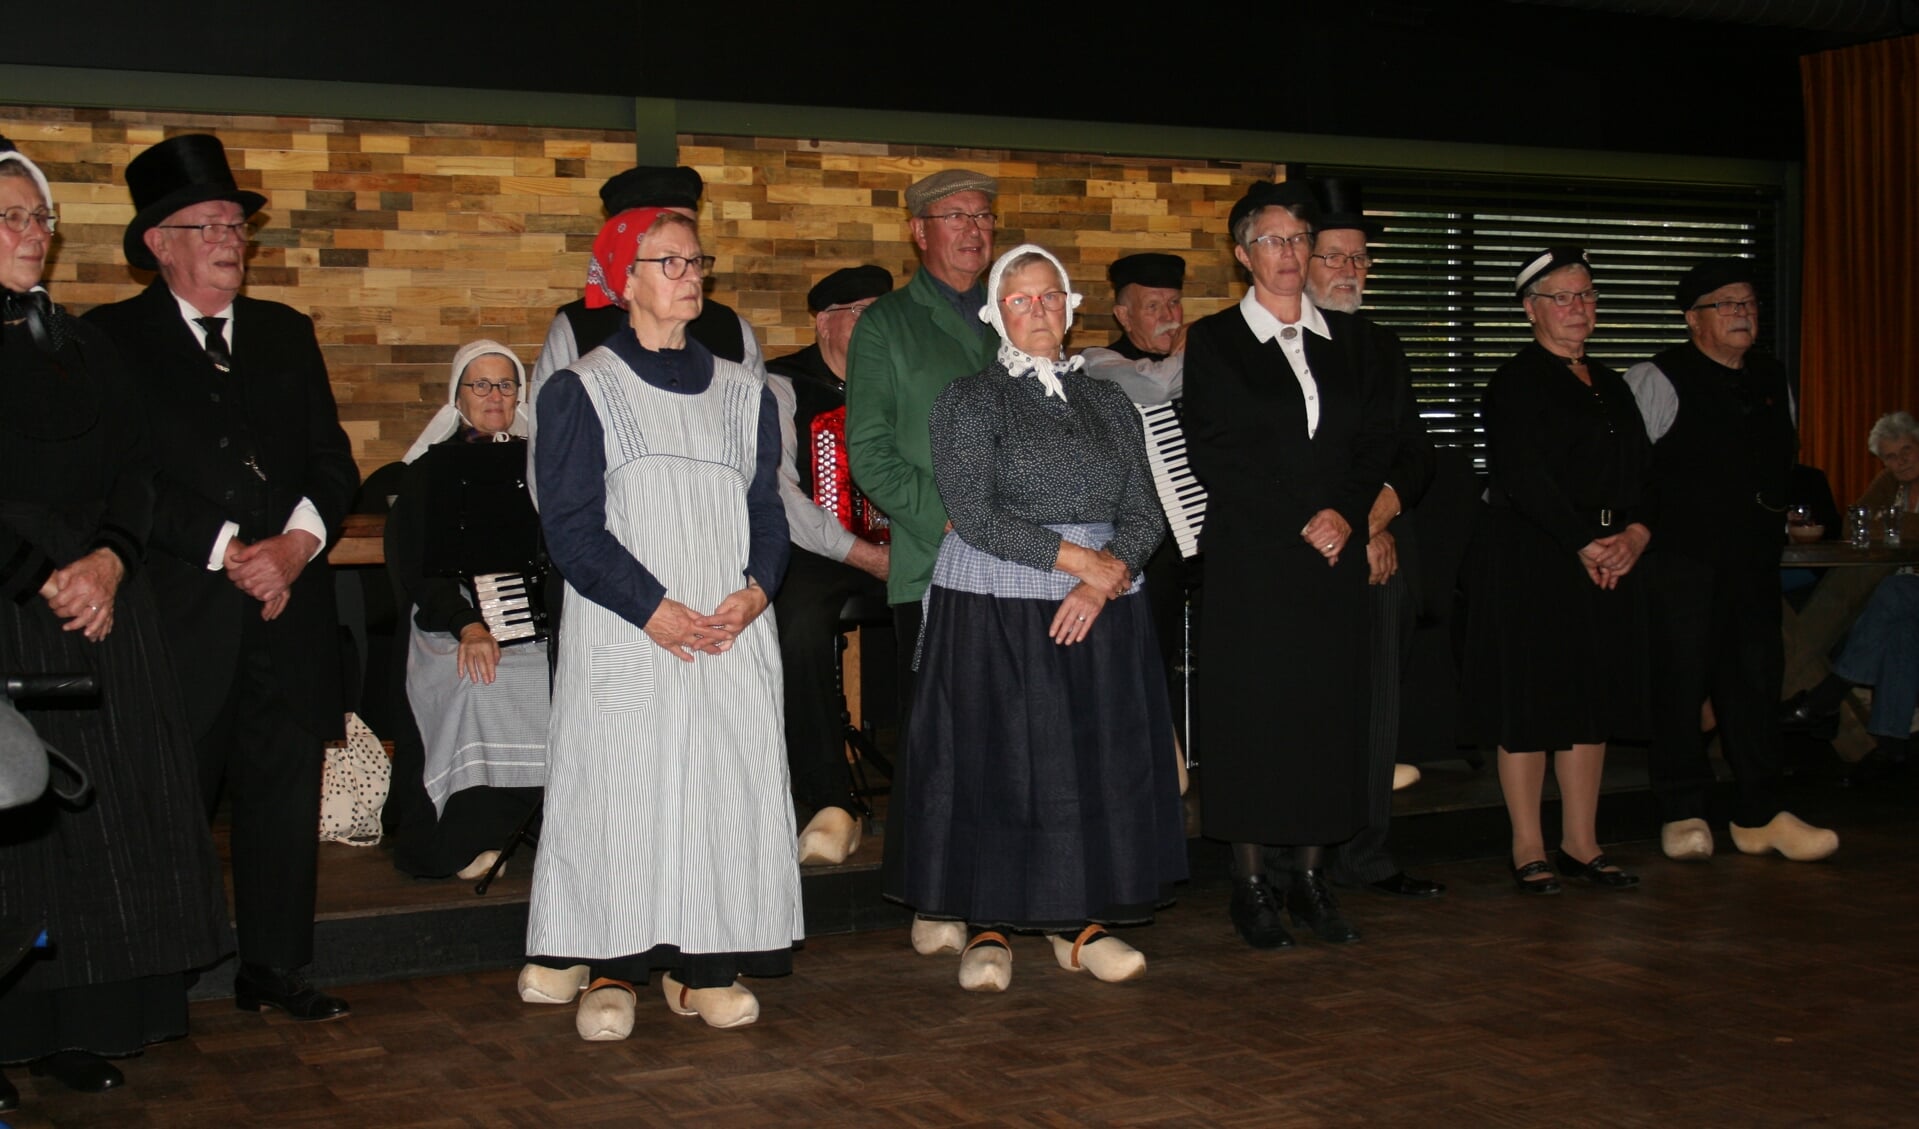 Wi'j eren 't Olde uit Zelhem trad op tijdens vijfjarig jubileum van Seniorenvereniging Hengelo-Steenderen. Foto: Marijke Cornelis